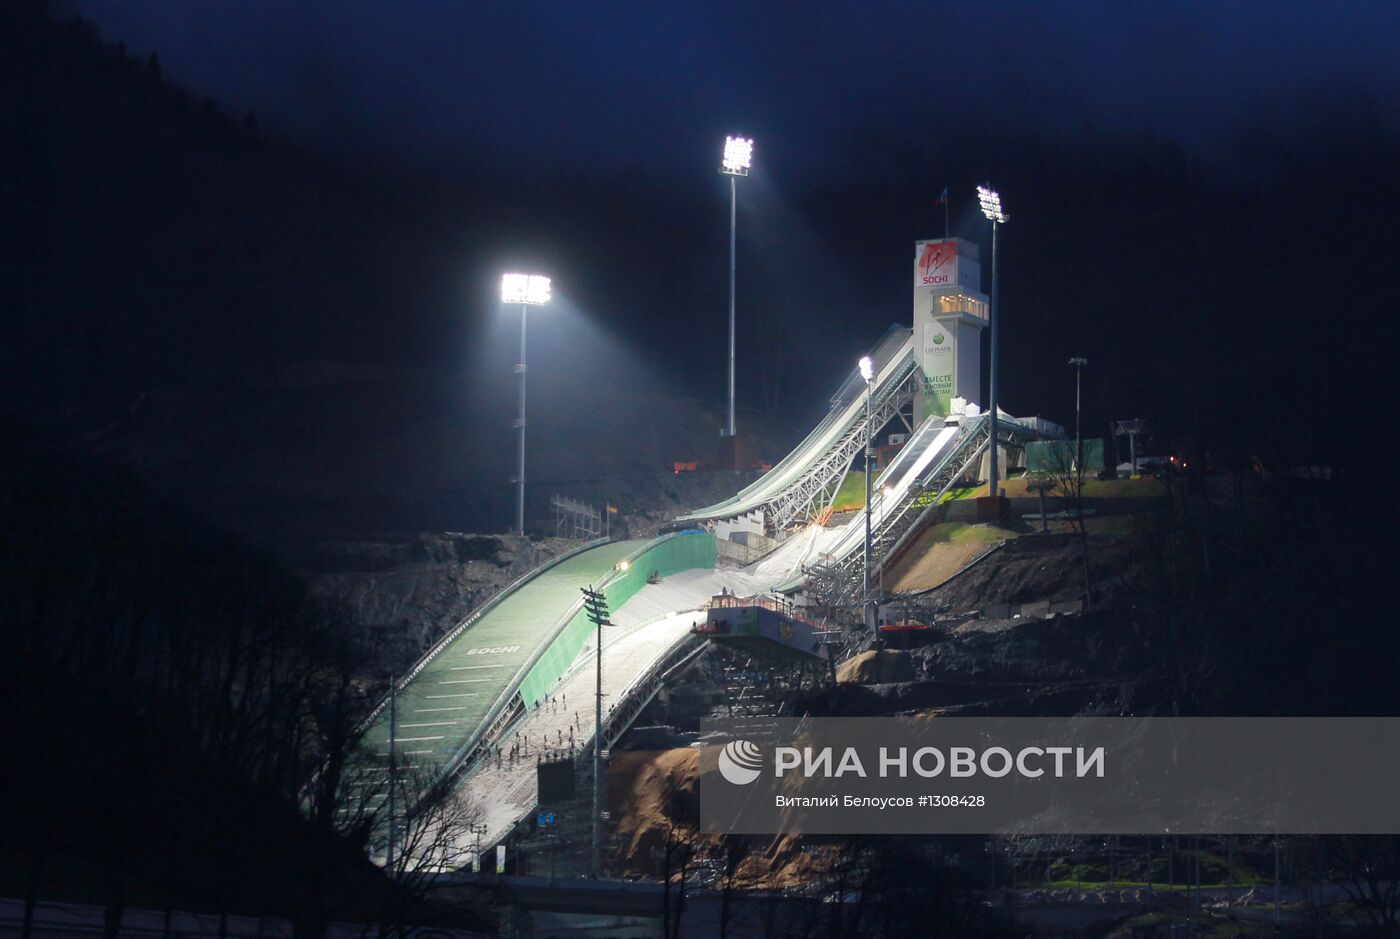 Комплекс лыжных трамплинов "Русские Горки" в Сочи